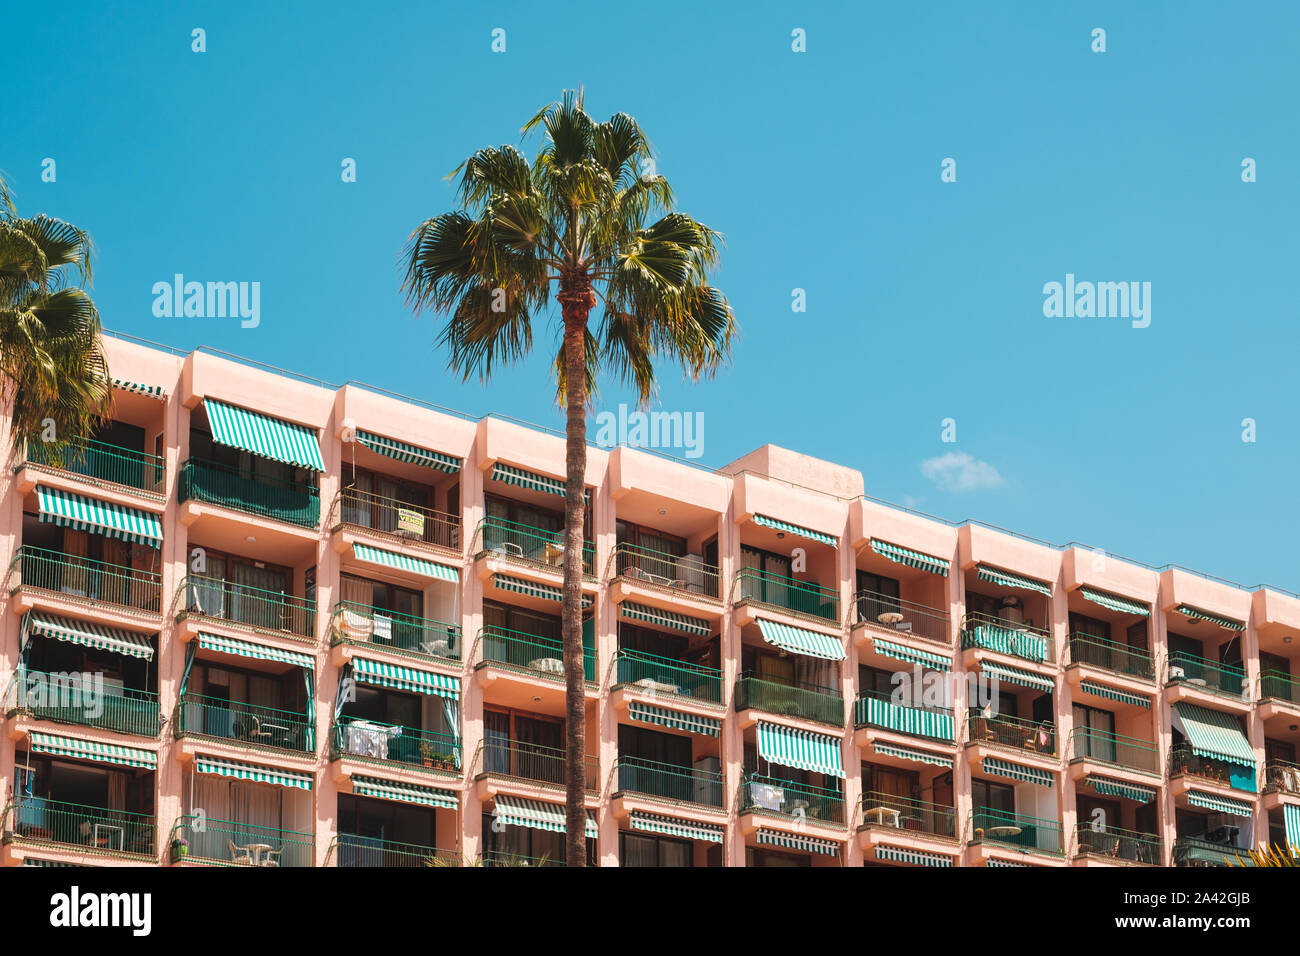 Ferienwohnung Gebäude, Balkone und Palme an einem sonnigen Tag Stockfoto